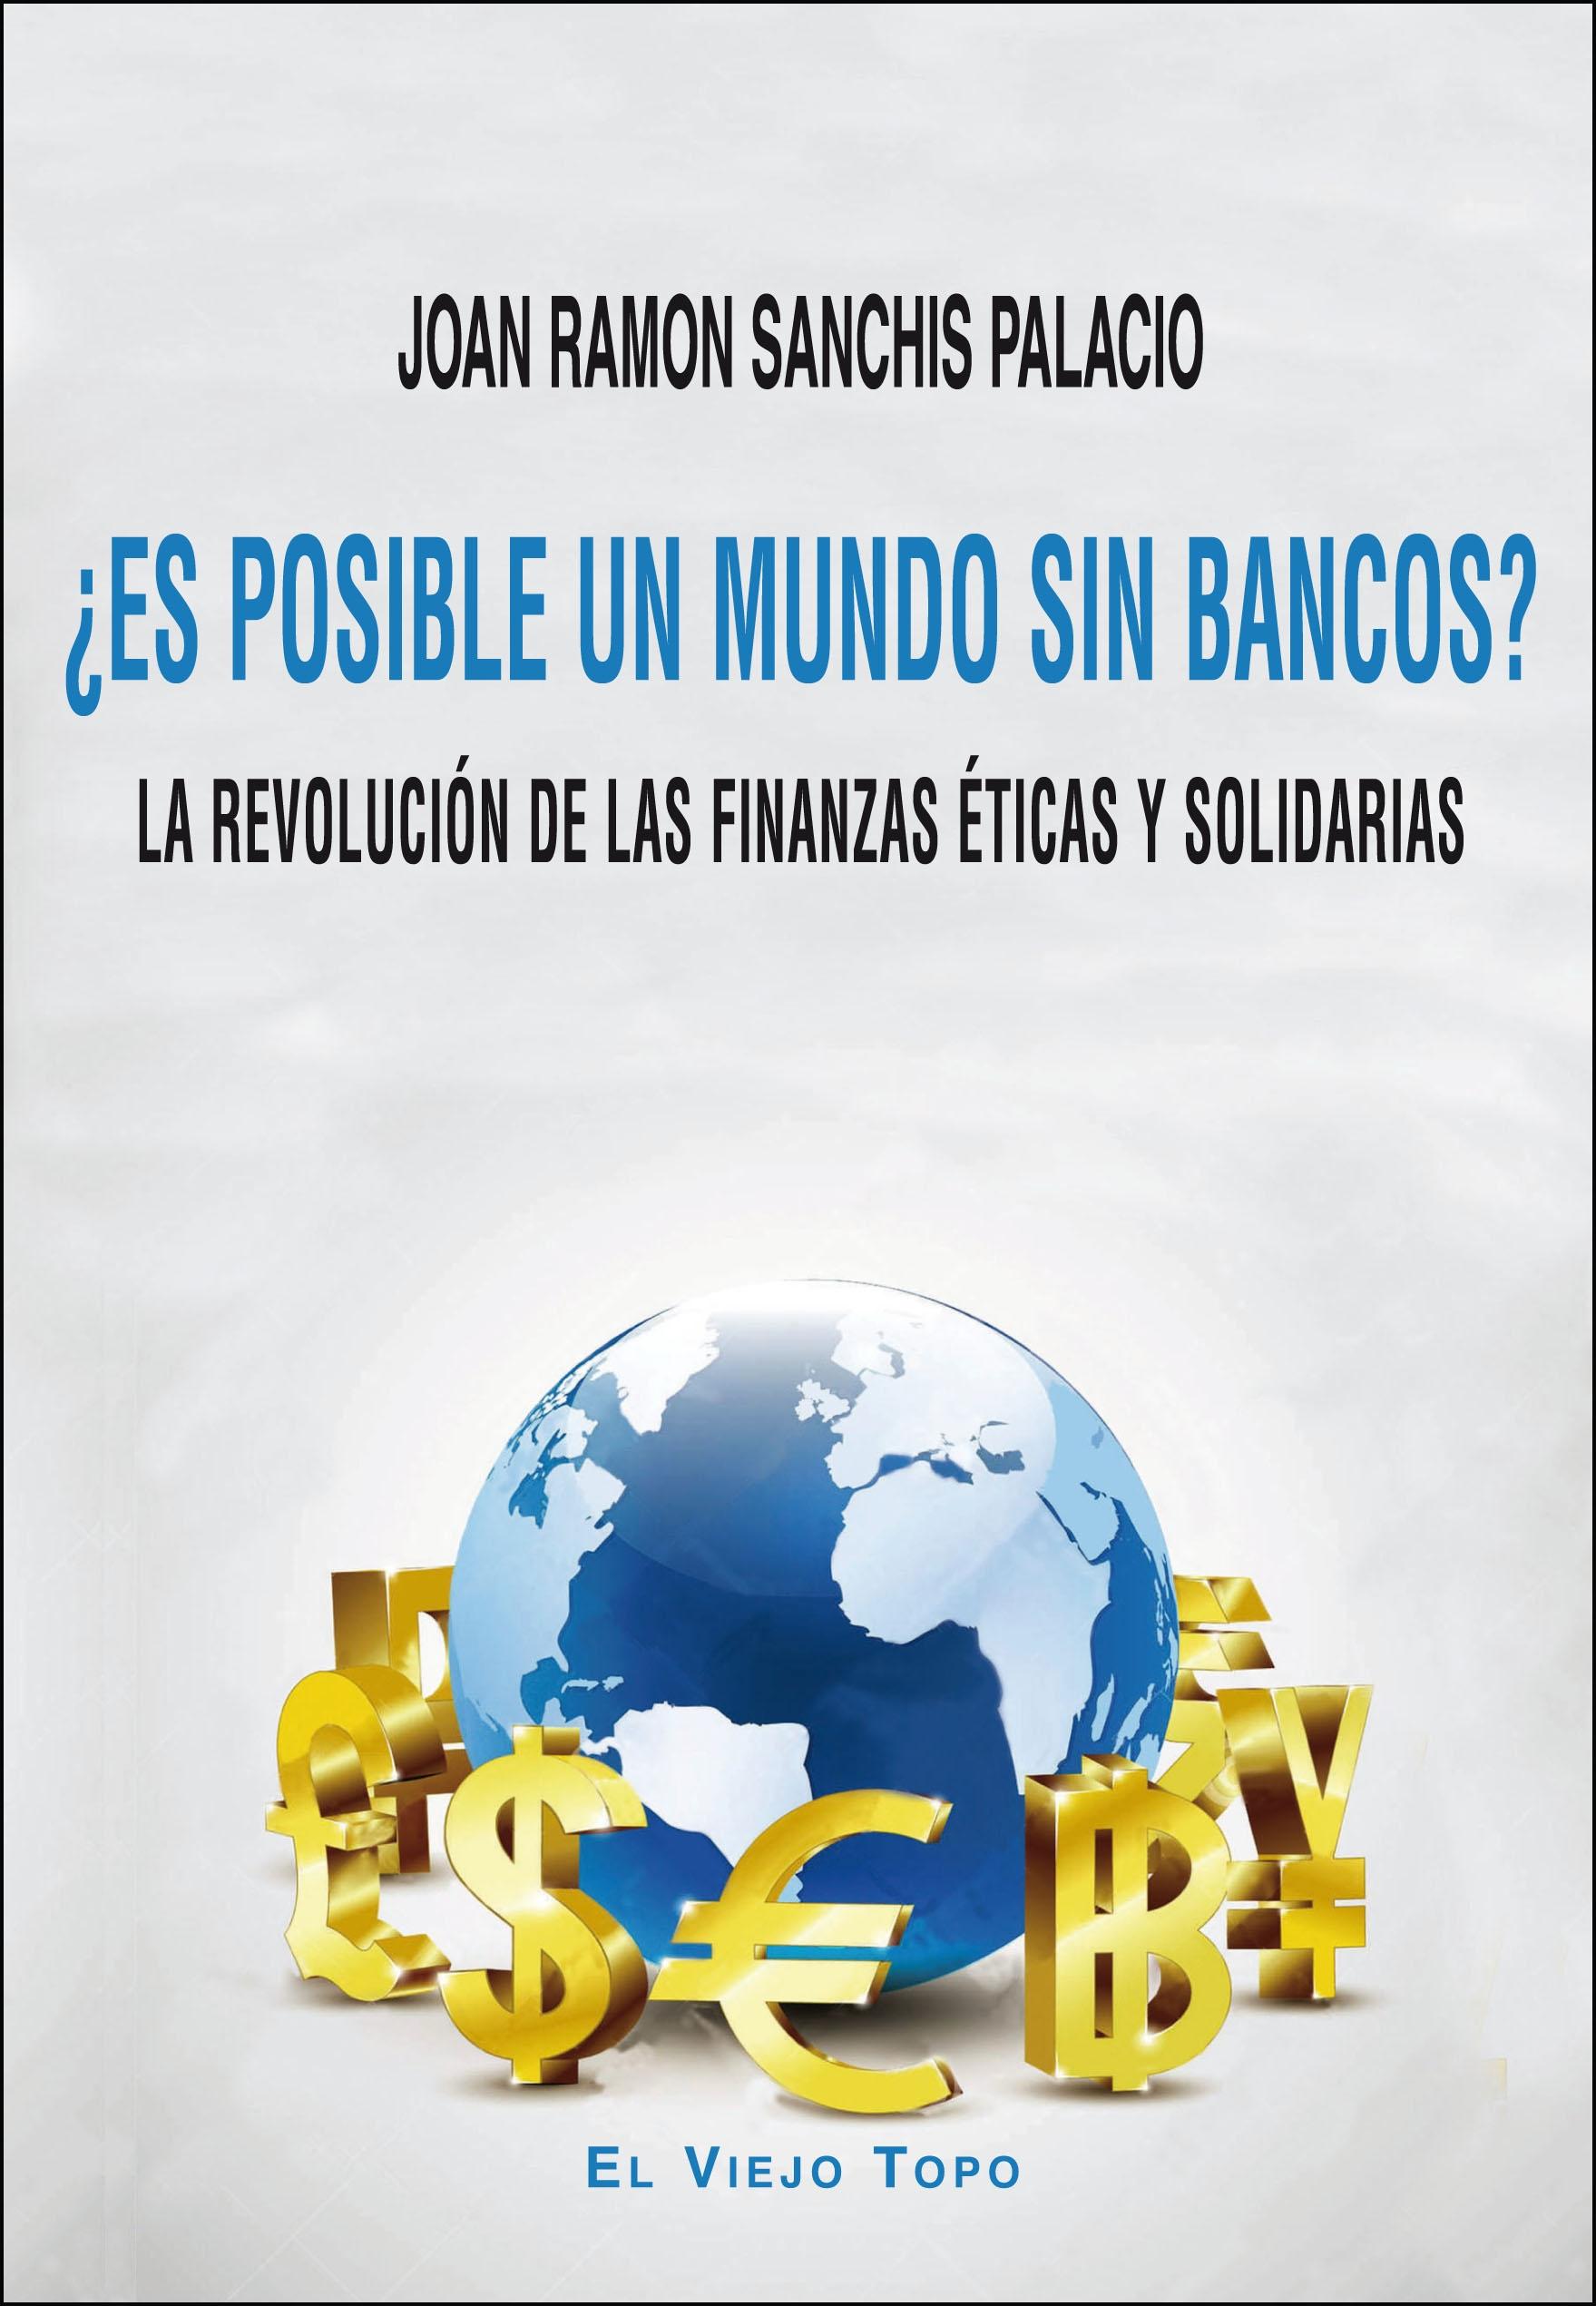 ¿Es Posible un Mundo sin Bancos? "La Revolución de las Finanzas Éticas y Solidarias"